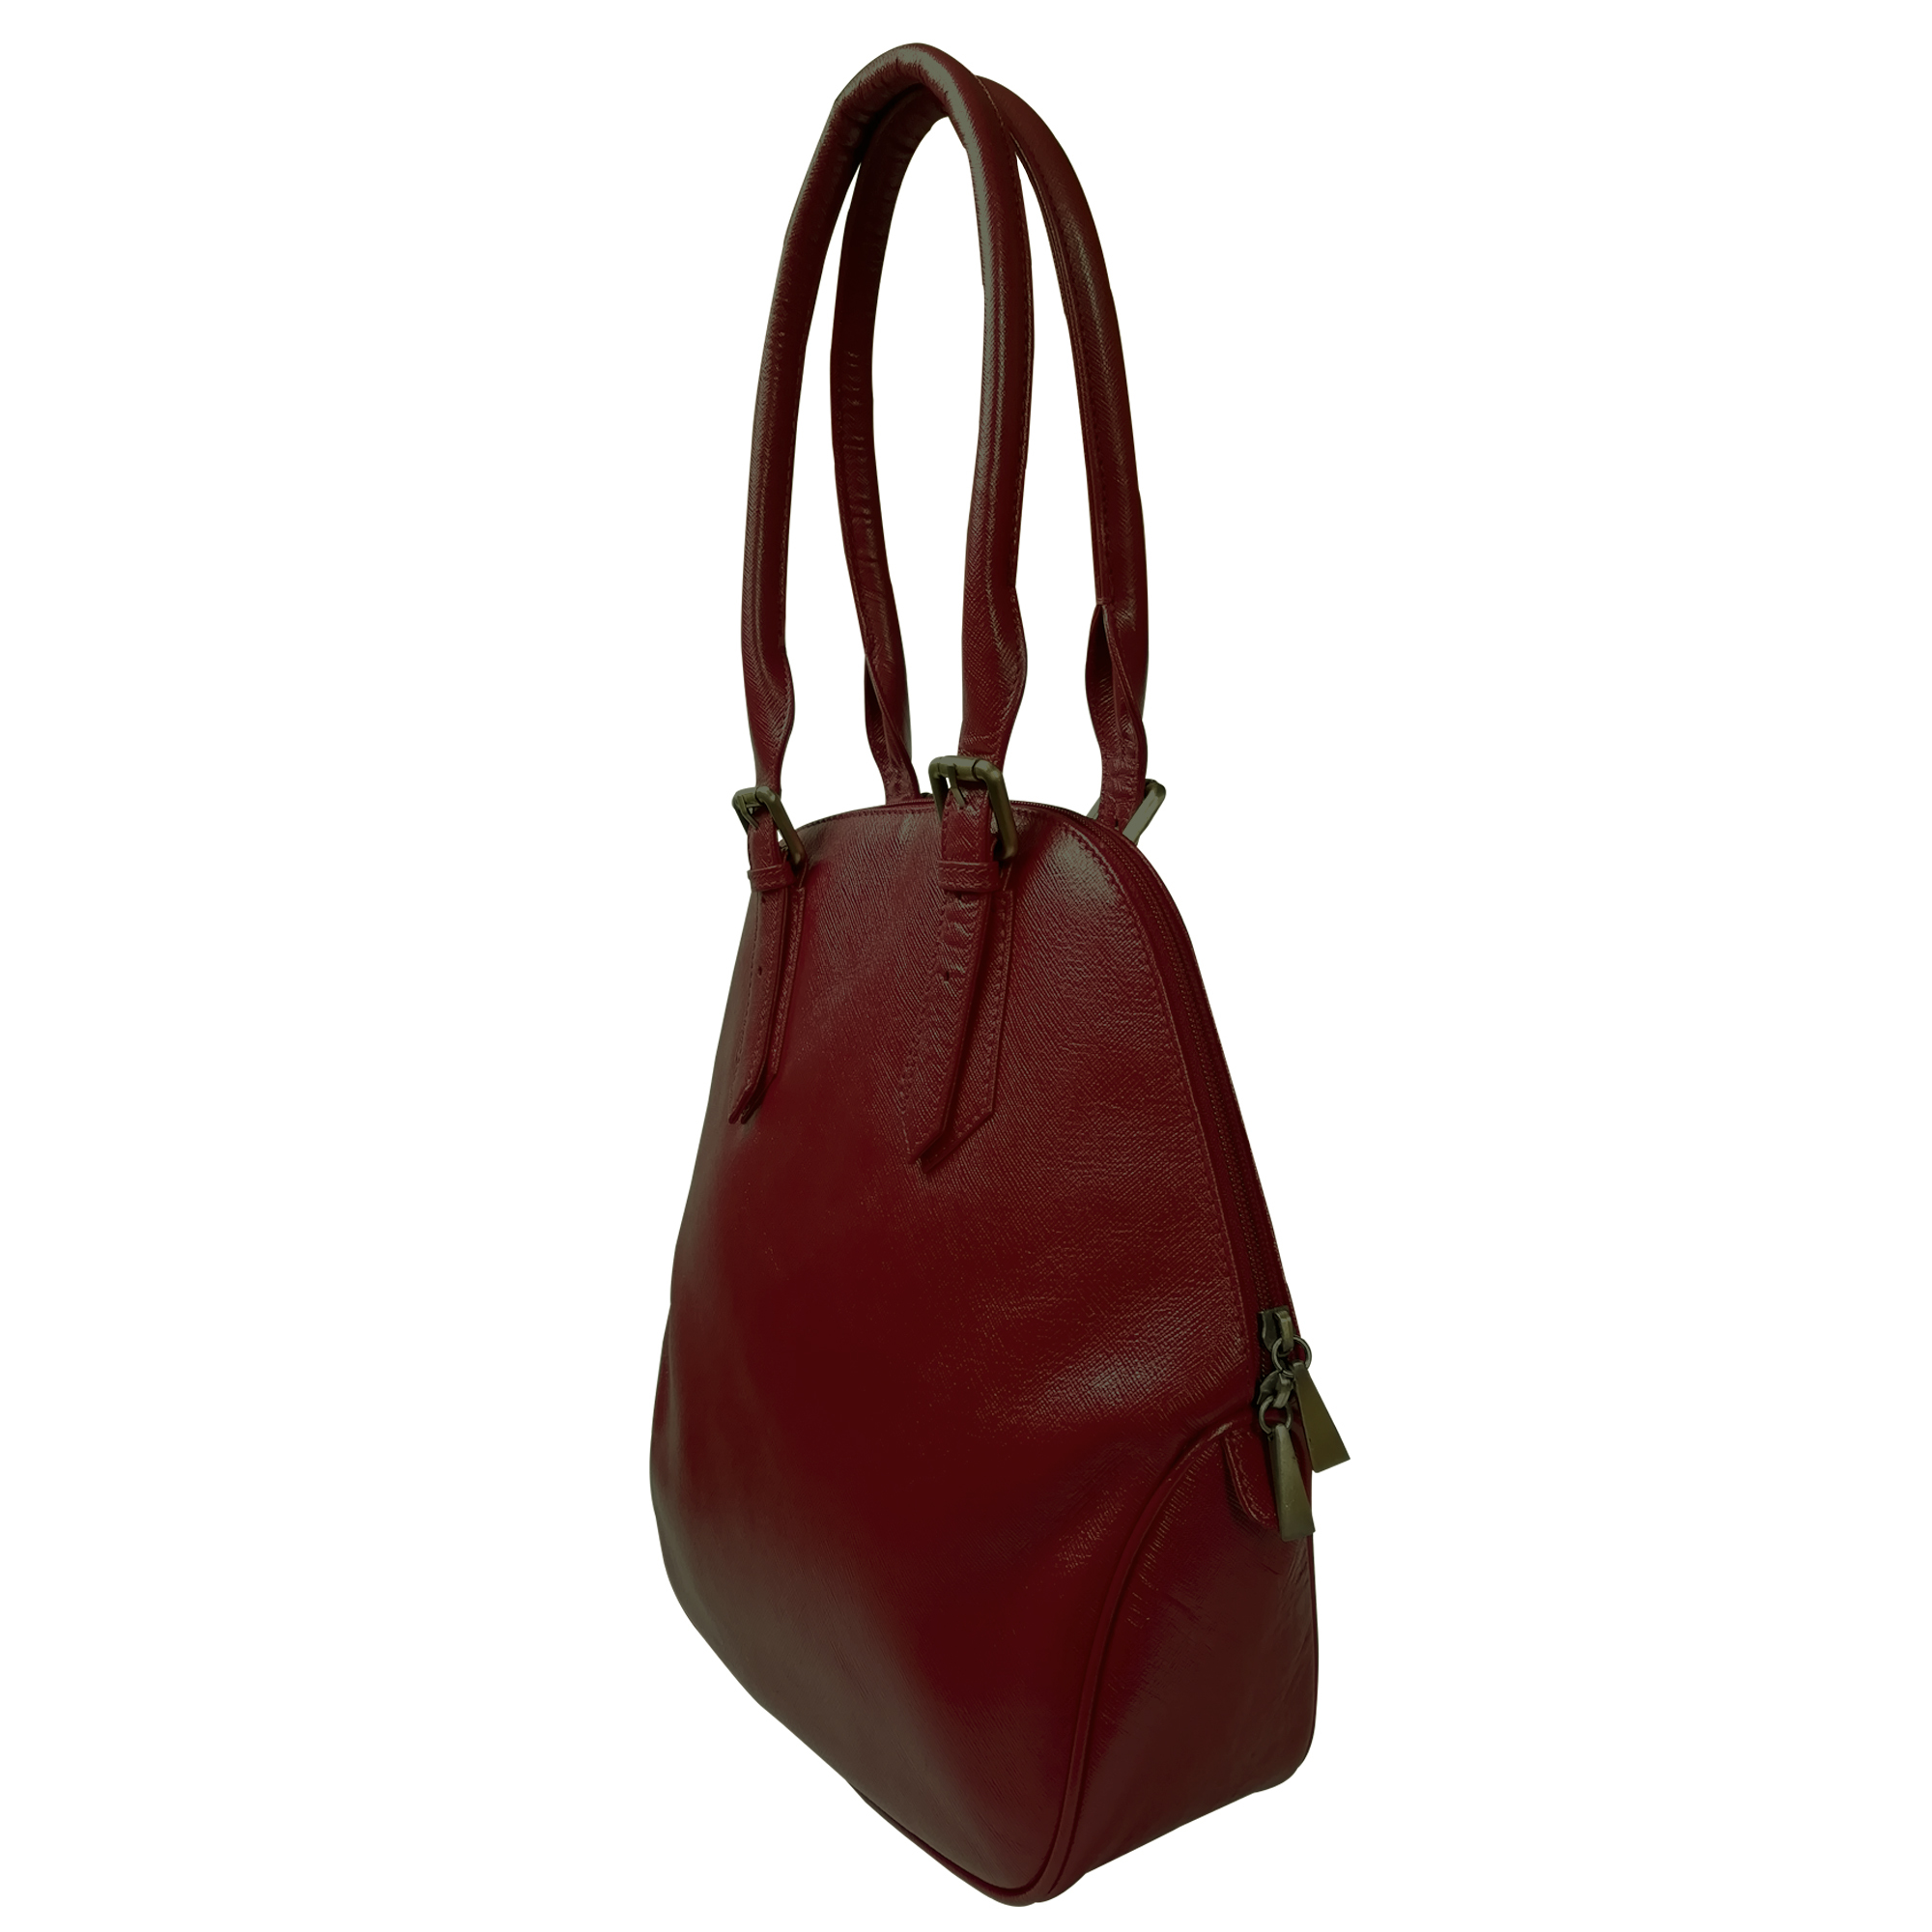 Genuine Leather Handbag For Women